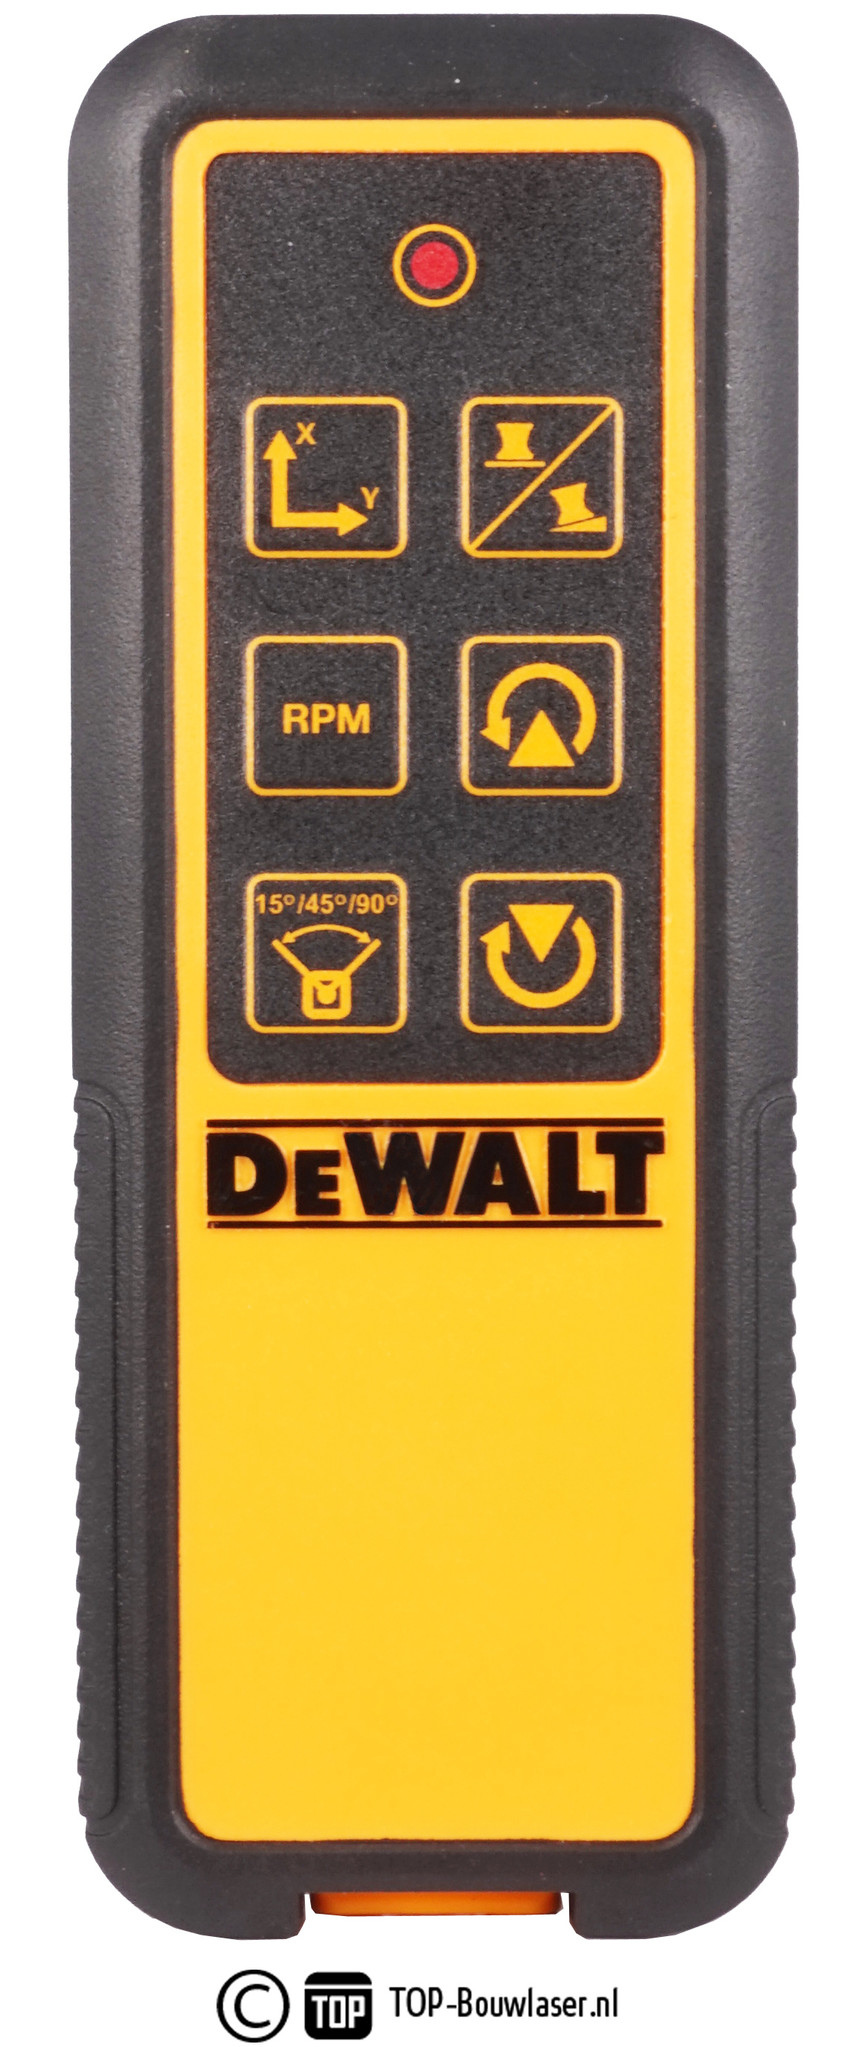 Bulk bescherming prieel DW0795 afstandsbediening voor DeWALT bouwlaser - TOP-Bouwlaser.nl